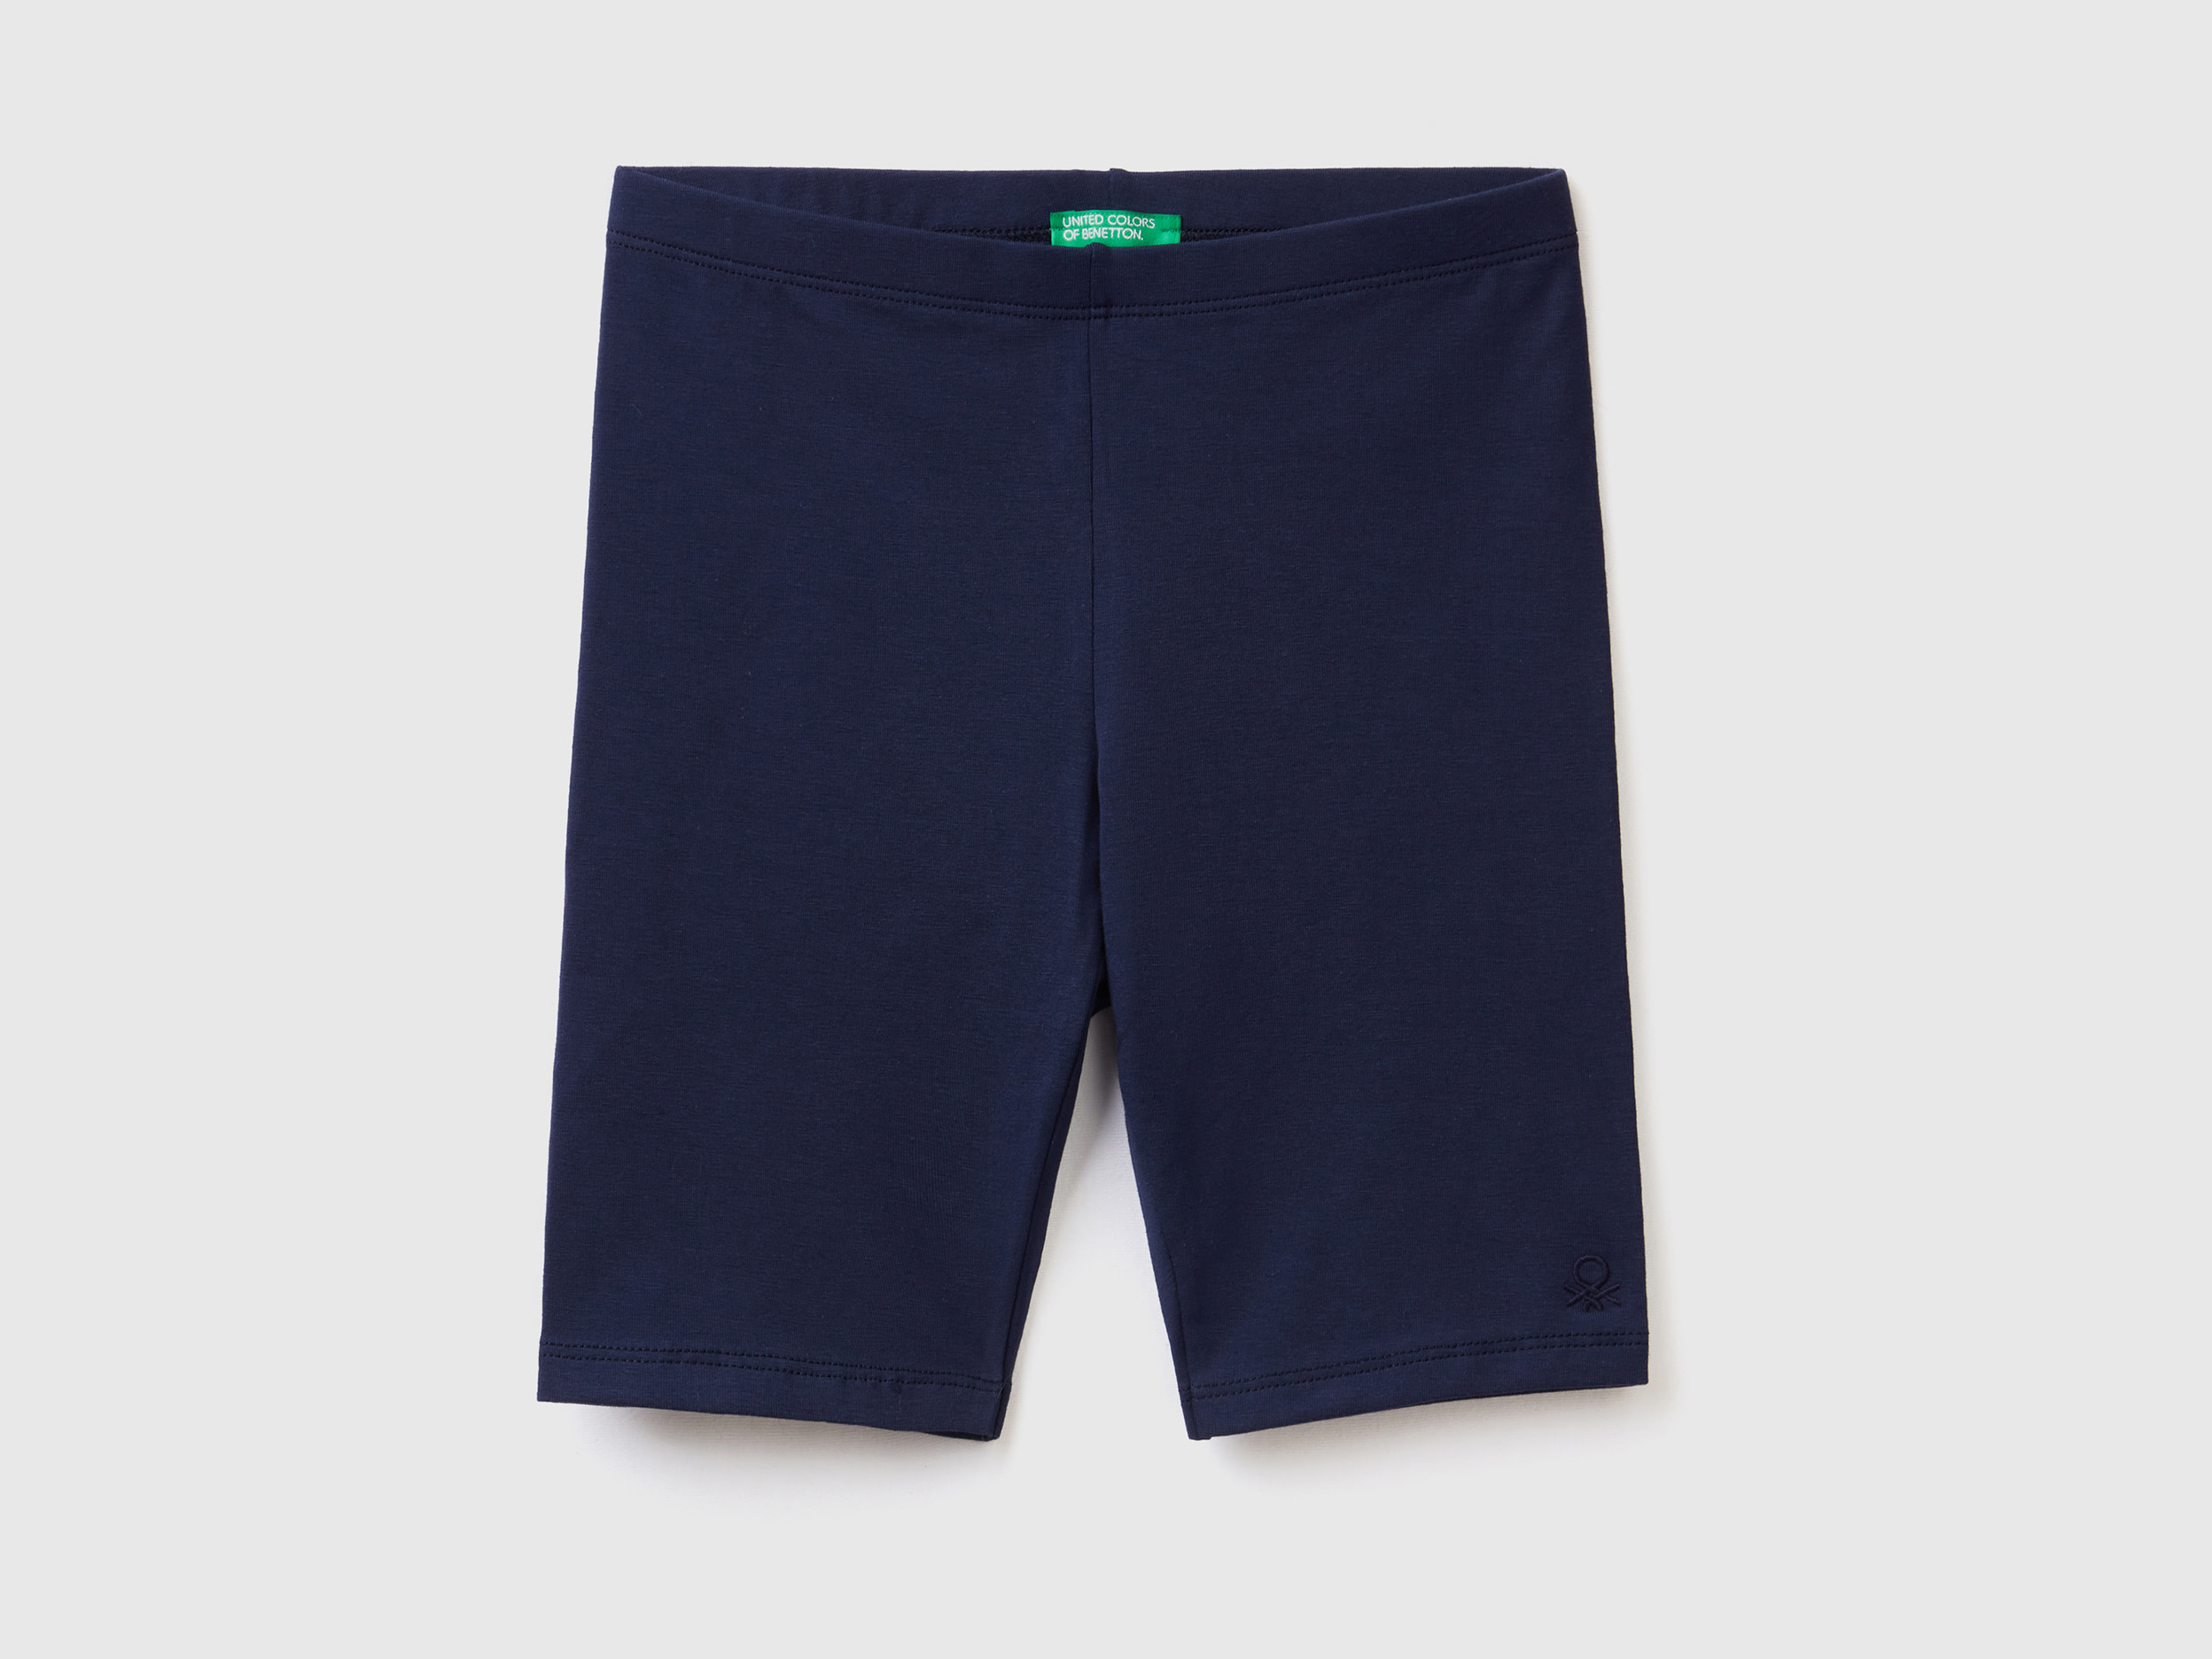 Benetton, Short Leggings In Stretch Cotton, size 2XL, Dark Blue, Kids